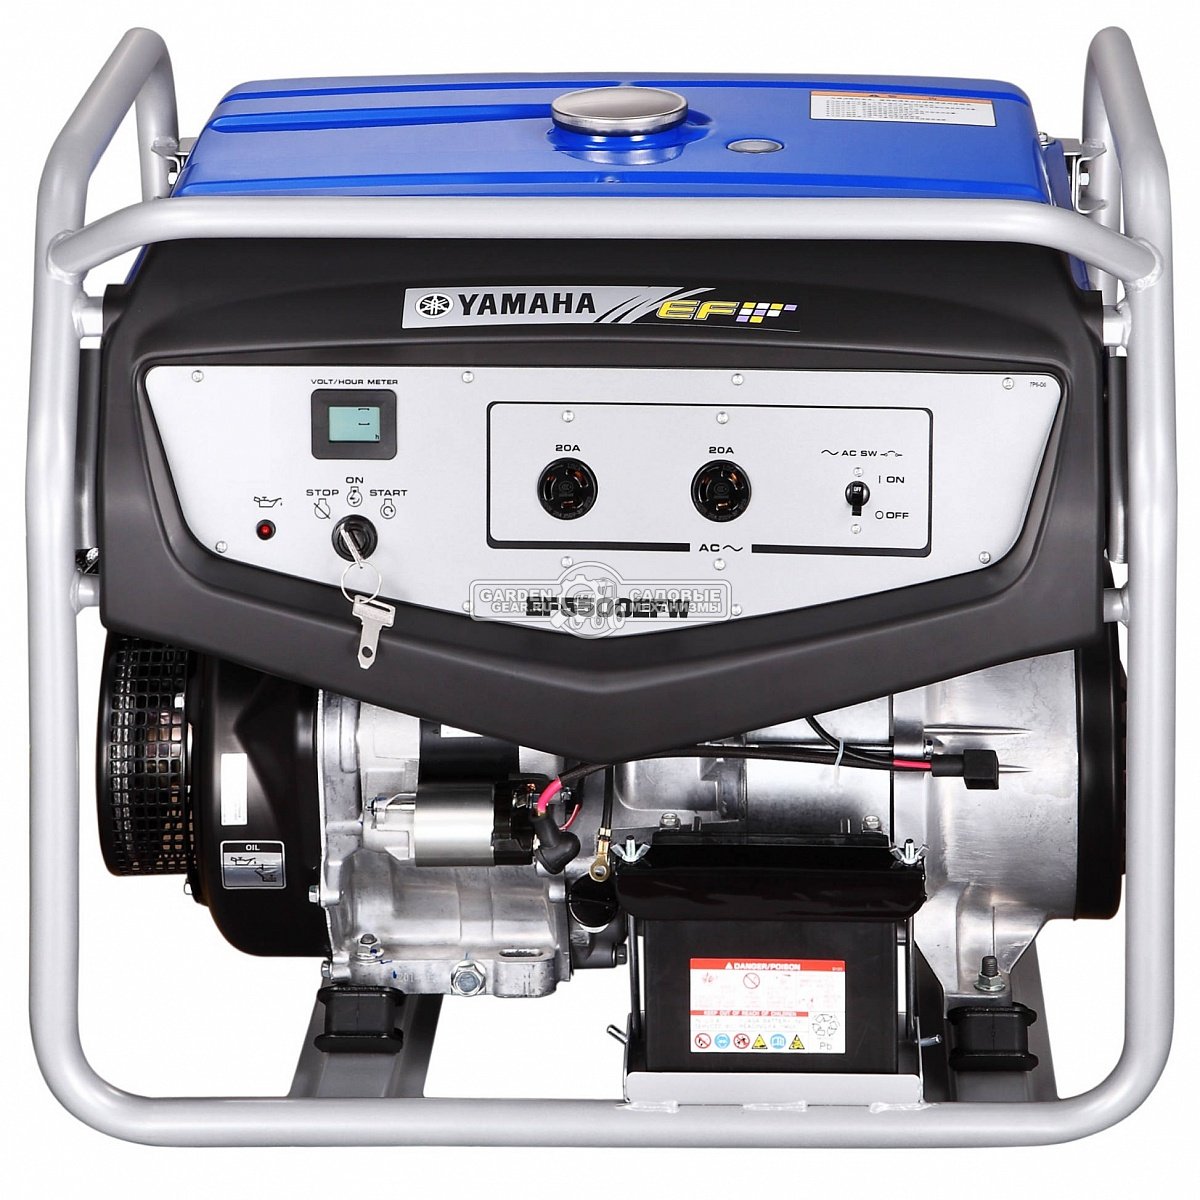 Бензиновый генератор Yamaha EF 5500 EFW (PRC, Yamaha, 358 см3, 3.8/4.6 кВт, эл/стартер, 28 л, 90 кг)